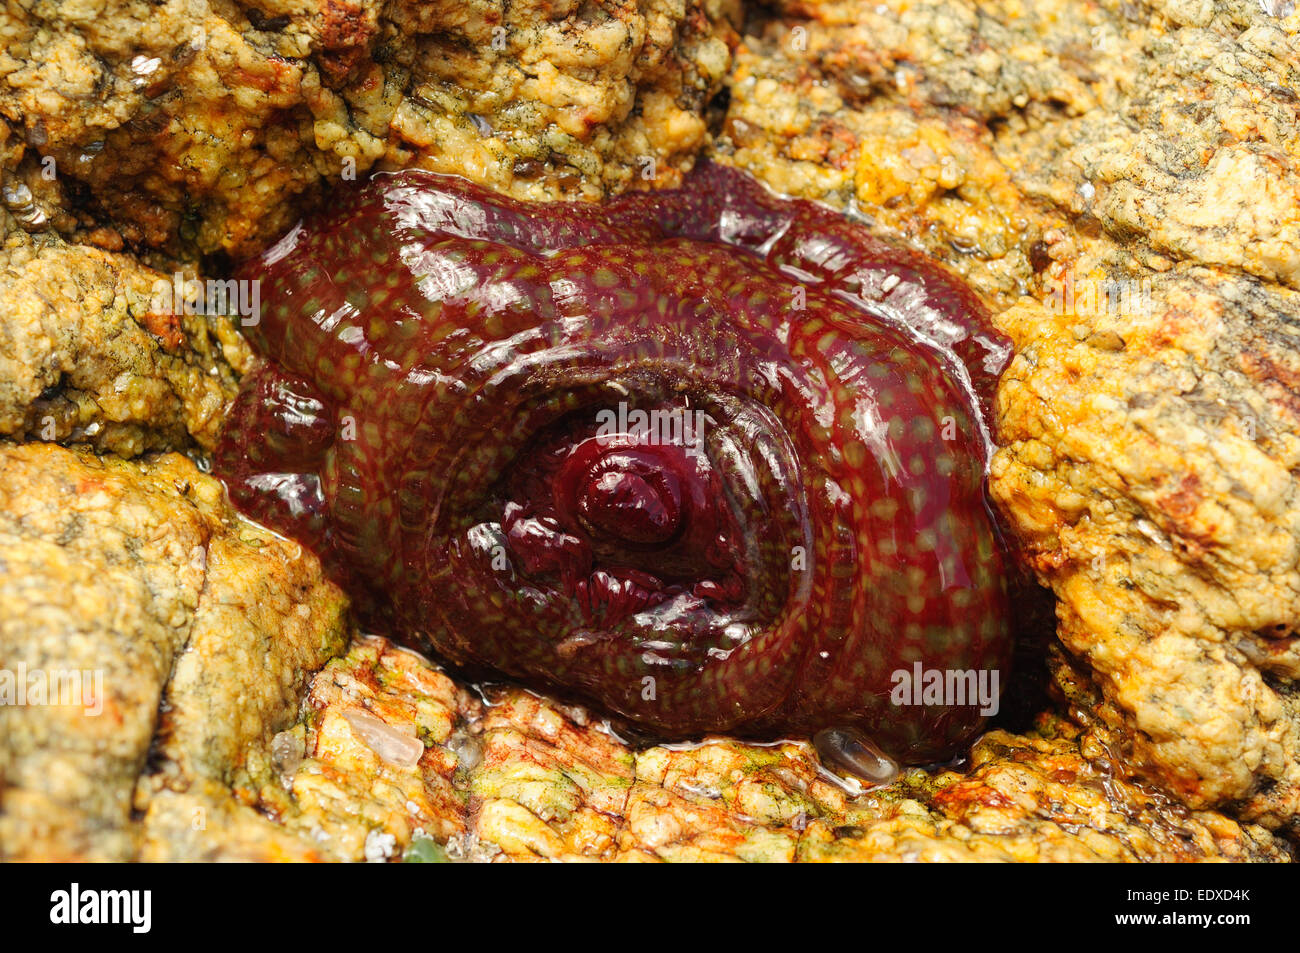 Strawberry anemone (Actinia fragacea) Stock Photo